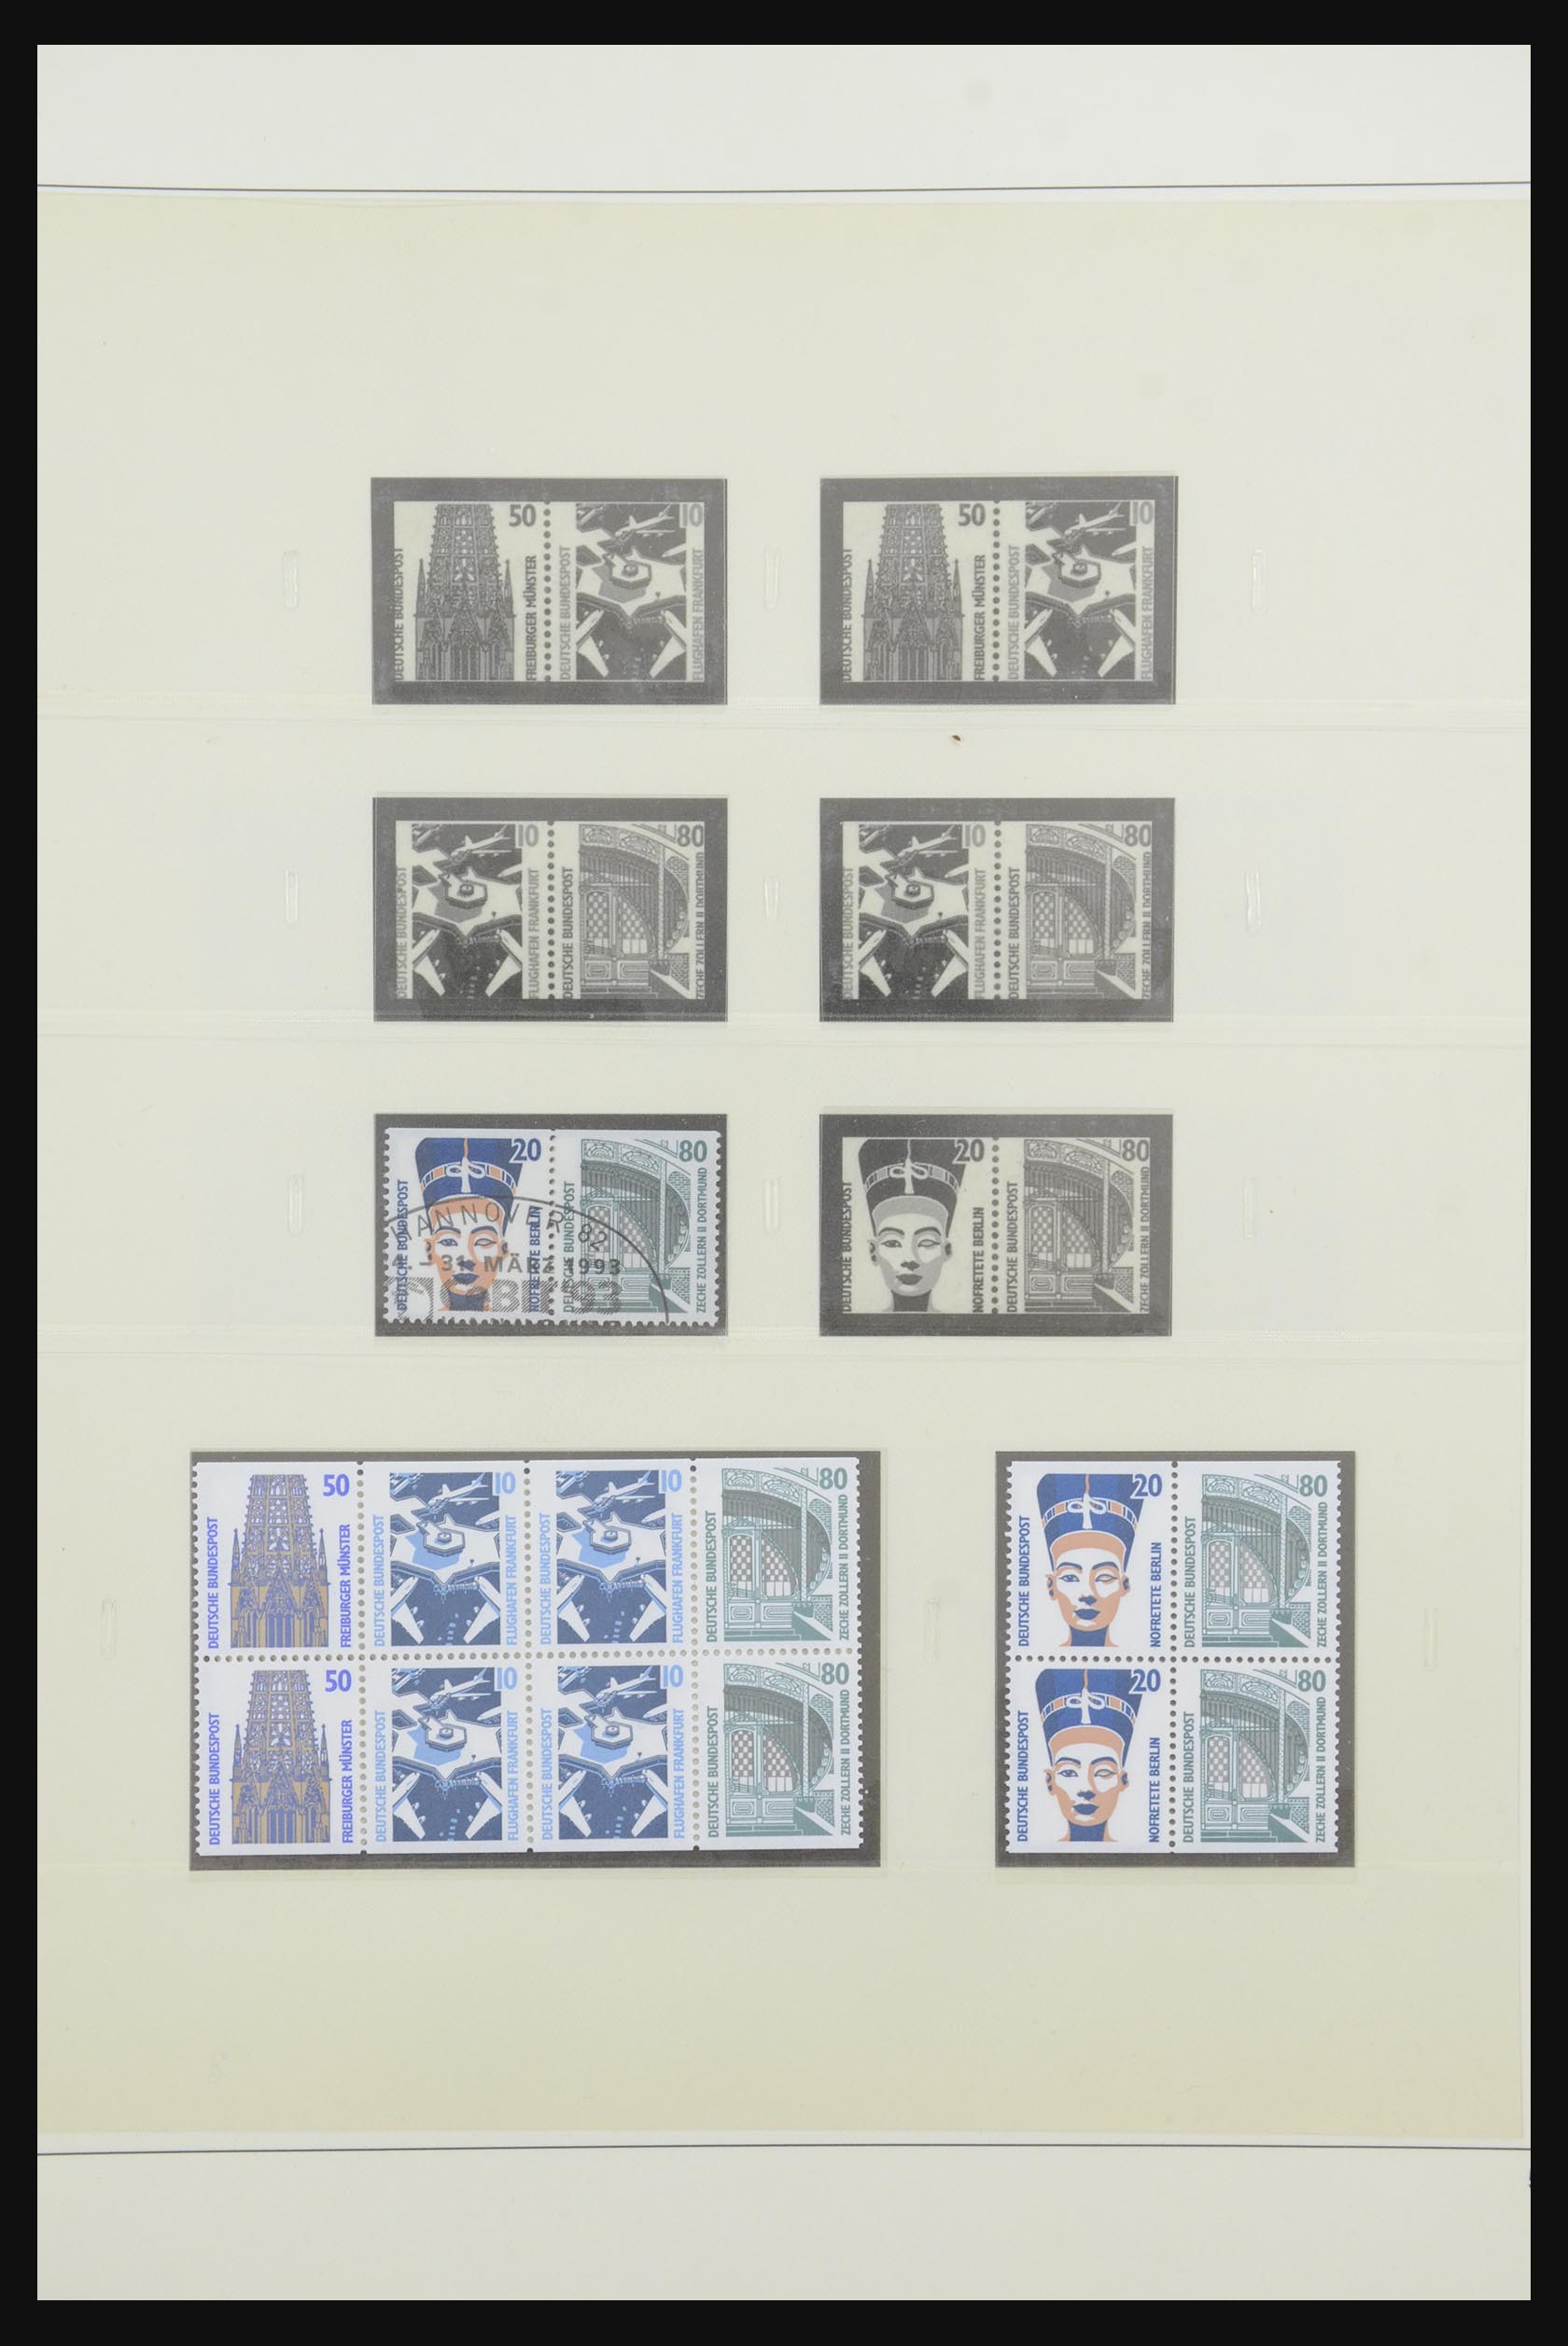 31842 077 - 31842 Bundespost combinaties 1951-2003.